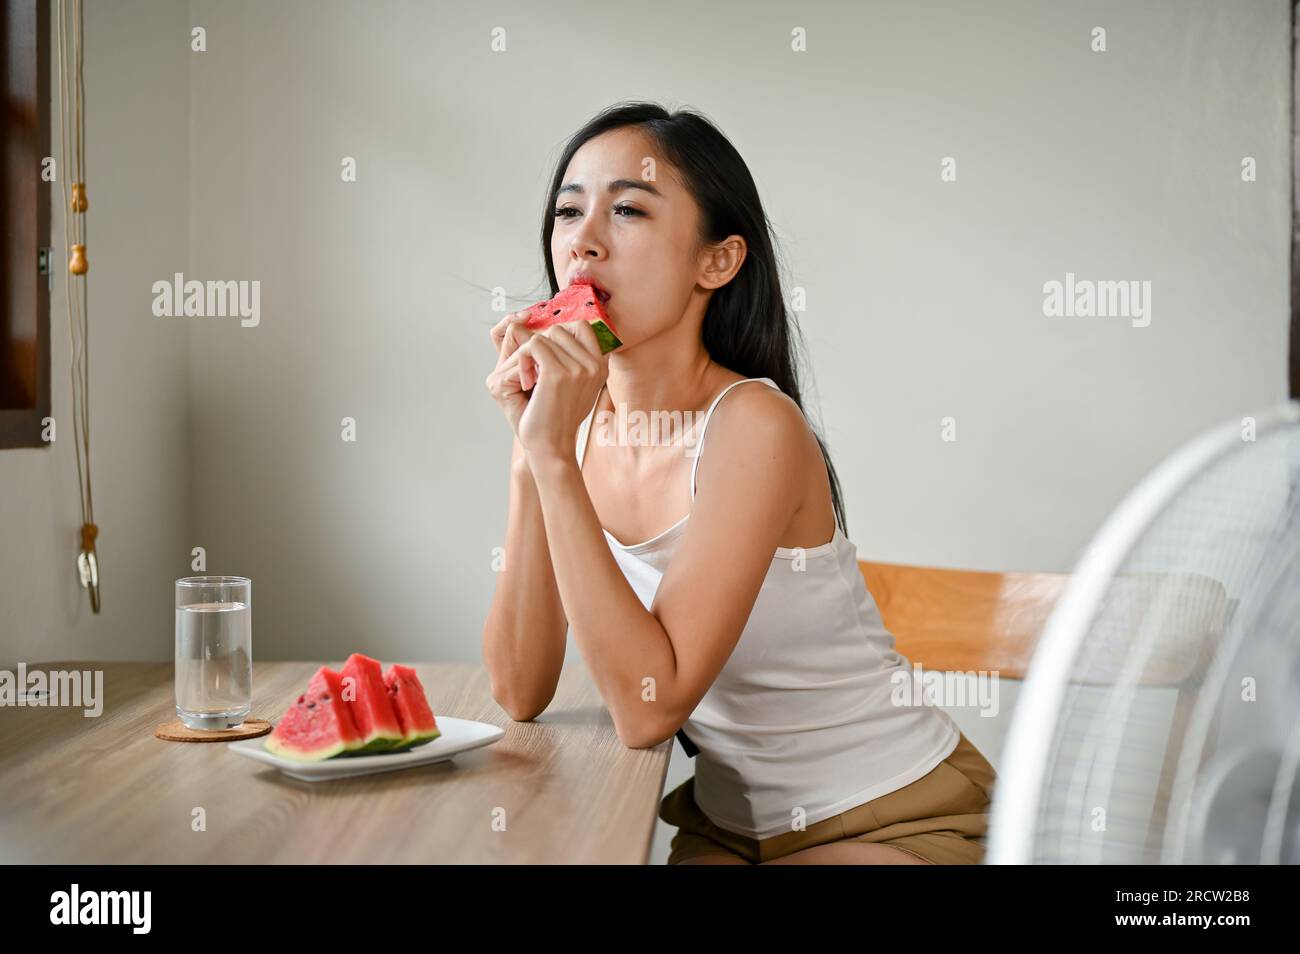 Eine wunderschöne asiatische Frau, die sich durch das heiße Wetter unwohl fühlt, isst Wassermelone und sitzt vor einem elektrischen Ventilator, um sich zu Hause zu erfrischen Stockfoto